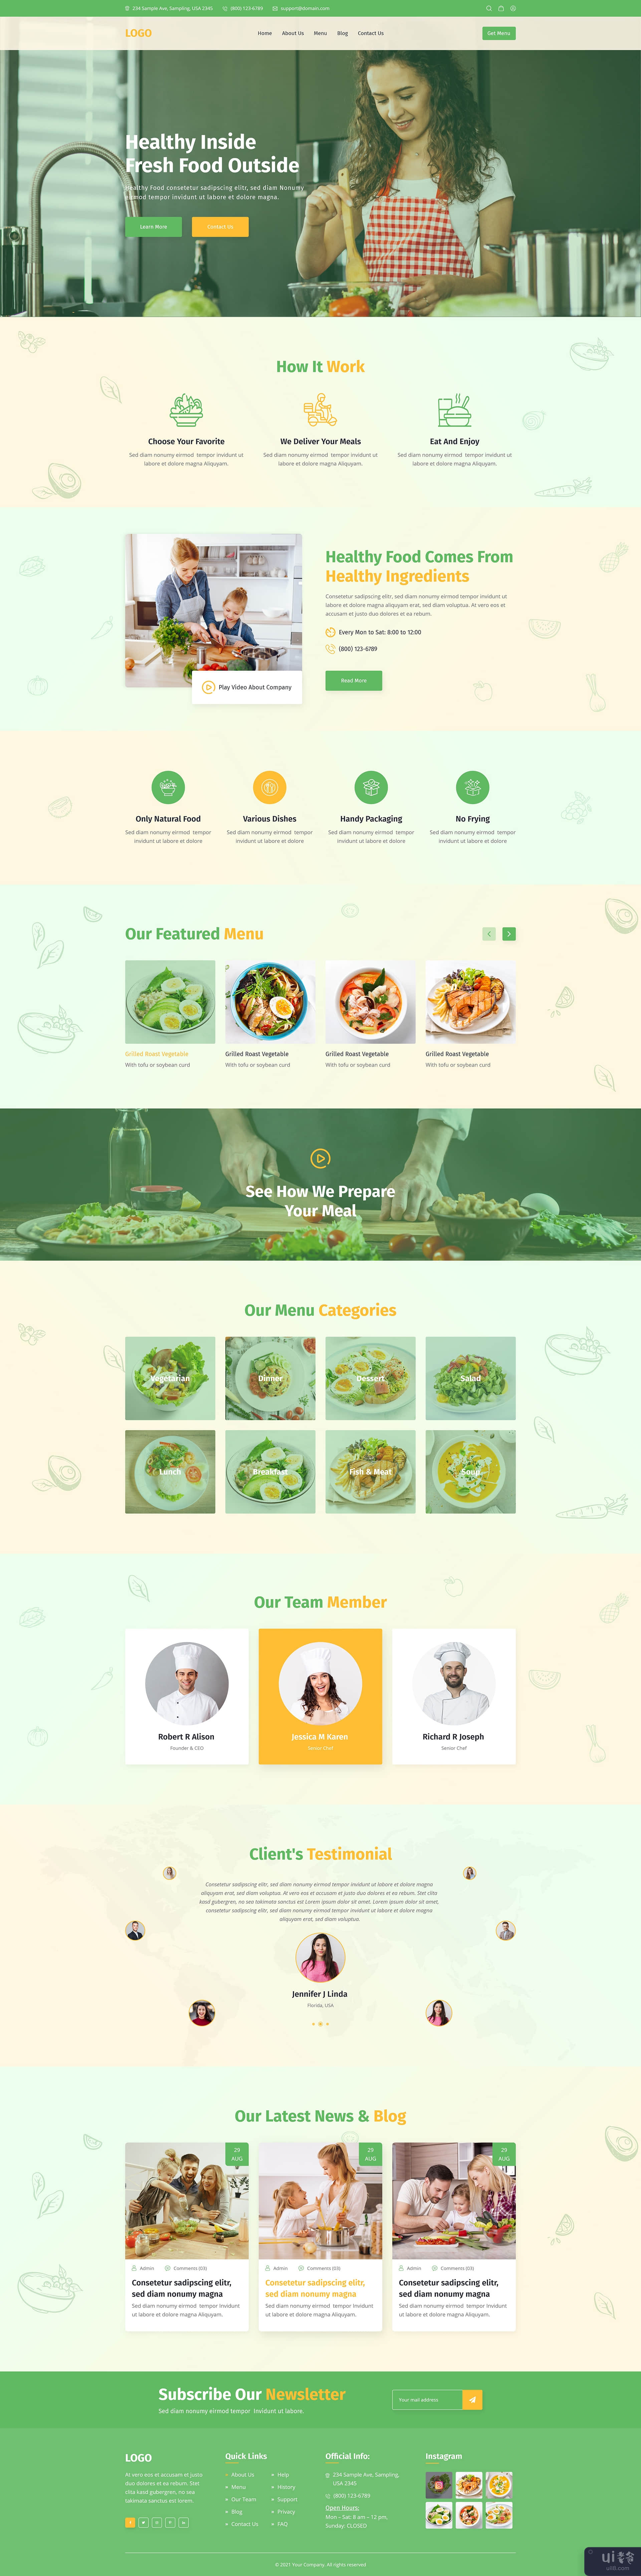 健康食品餐厅登陆页面设计(Healthy Food Resturant Landing Page Design)插图